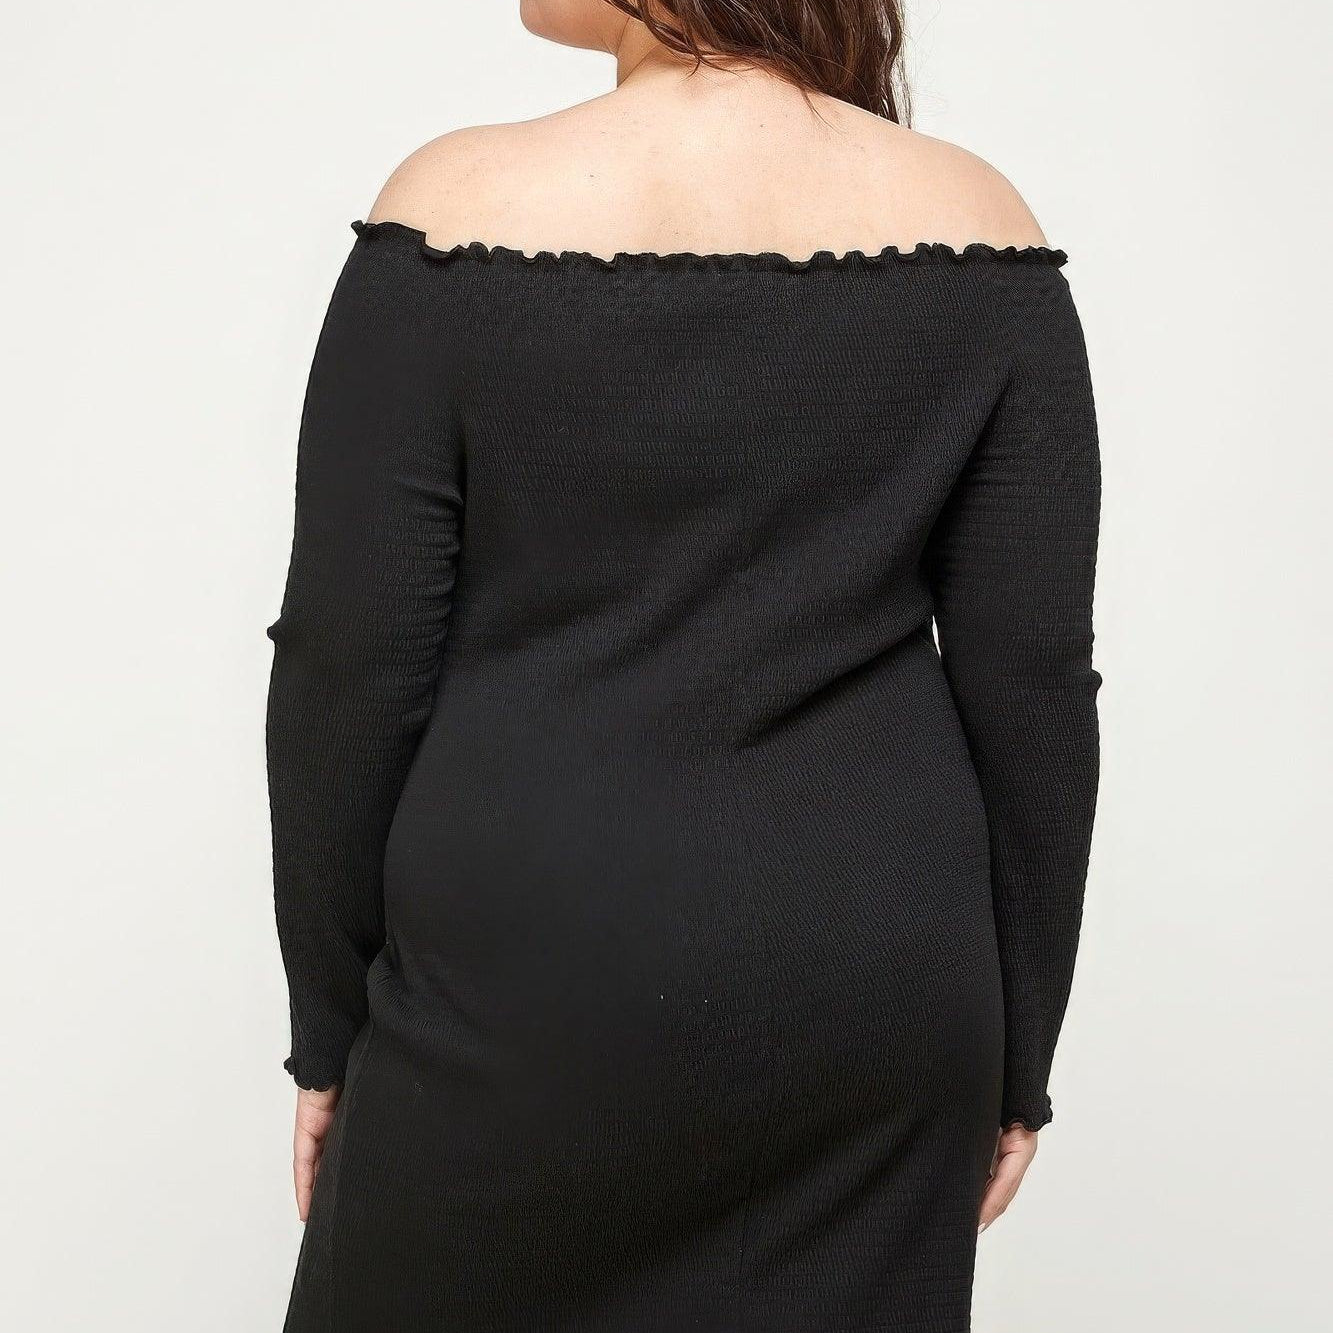 Women's Dresses Plus Size Black Smocked Off Shoulder Dress